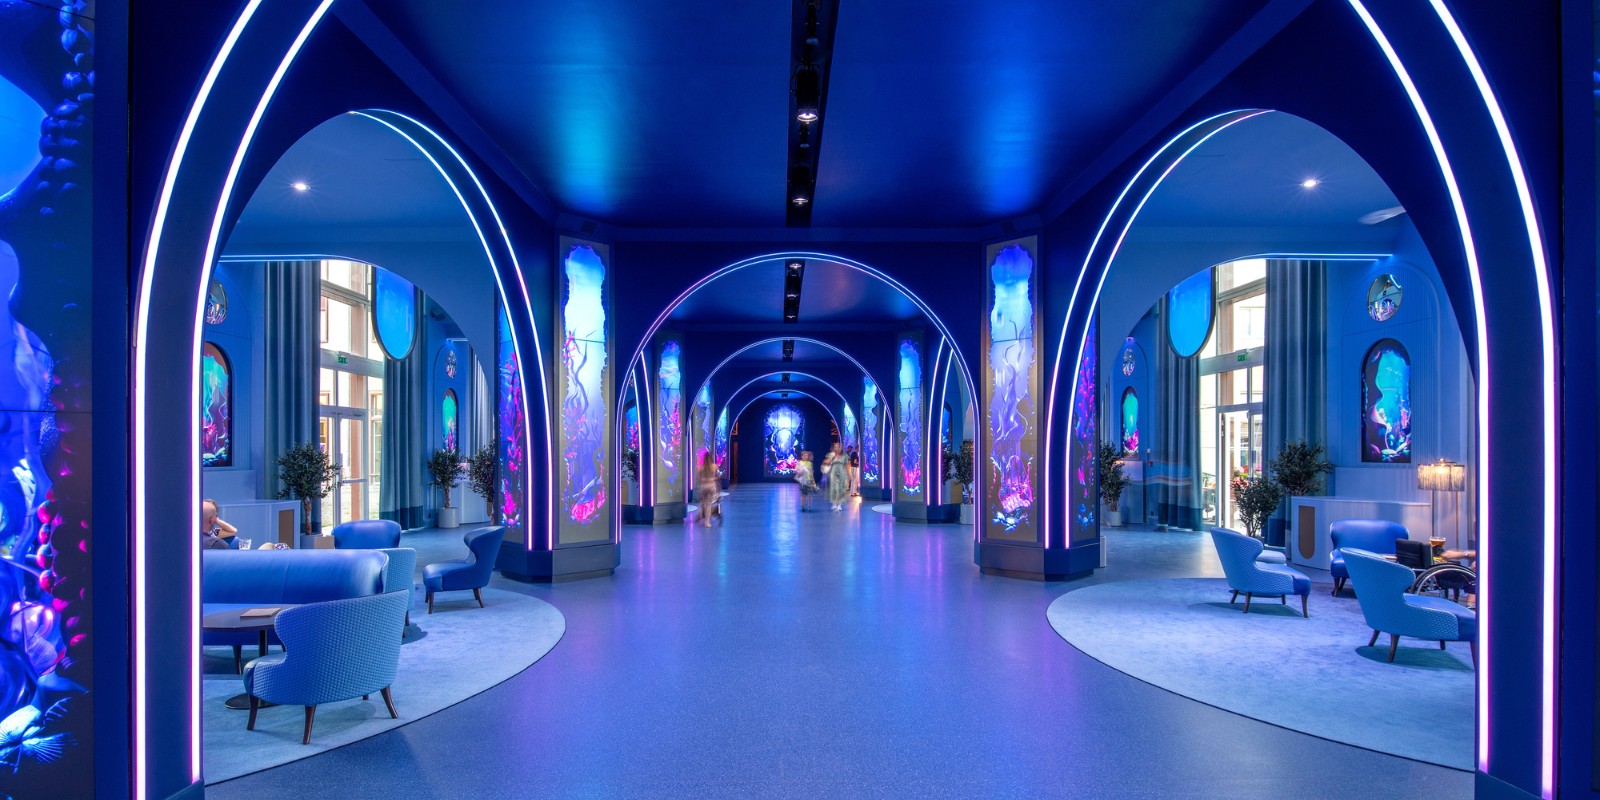 Lobby Grand Magic Hotel mit blauen Bögen und blauen Stühlen